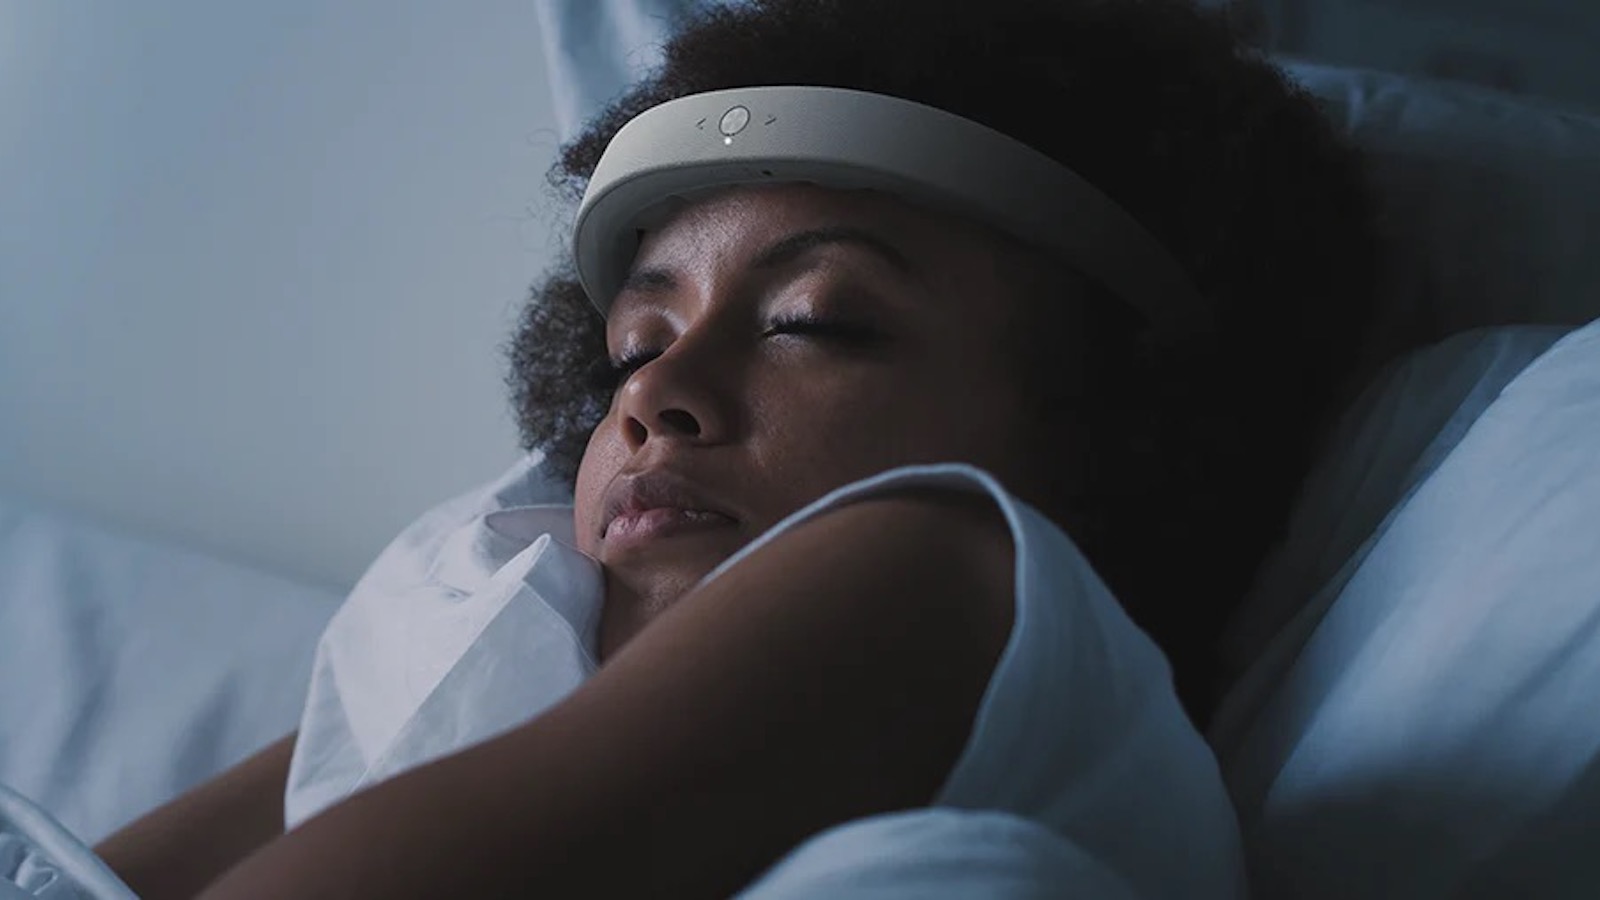 Vòng đeo thông minh FRENZ™ Brainband, dấu ấn Đổi mới sáng tạo trong việc chăm sóc giấc ngủ - Ảnh 3.